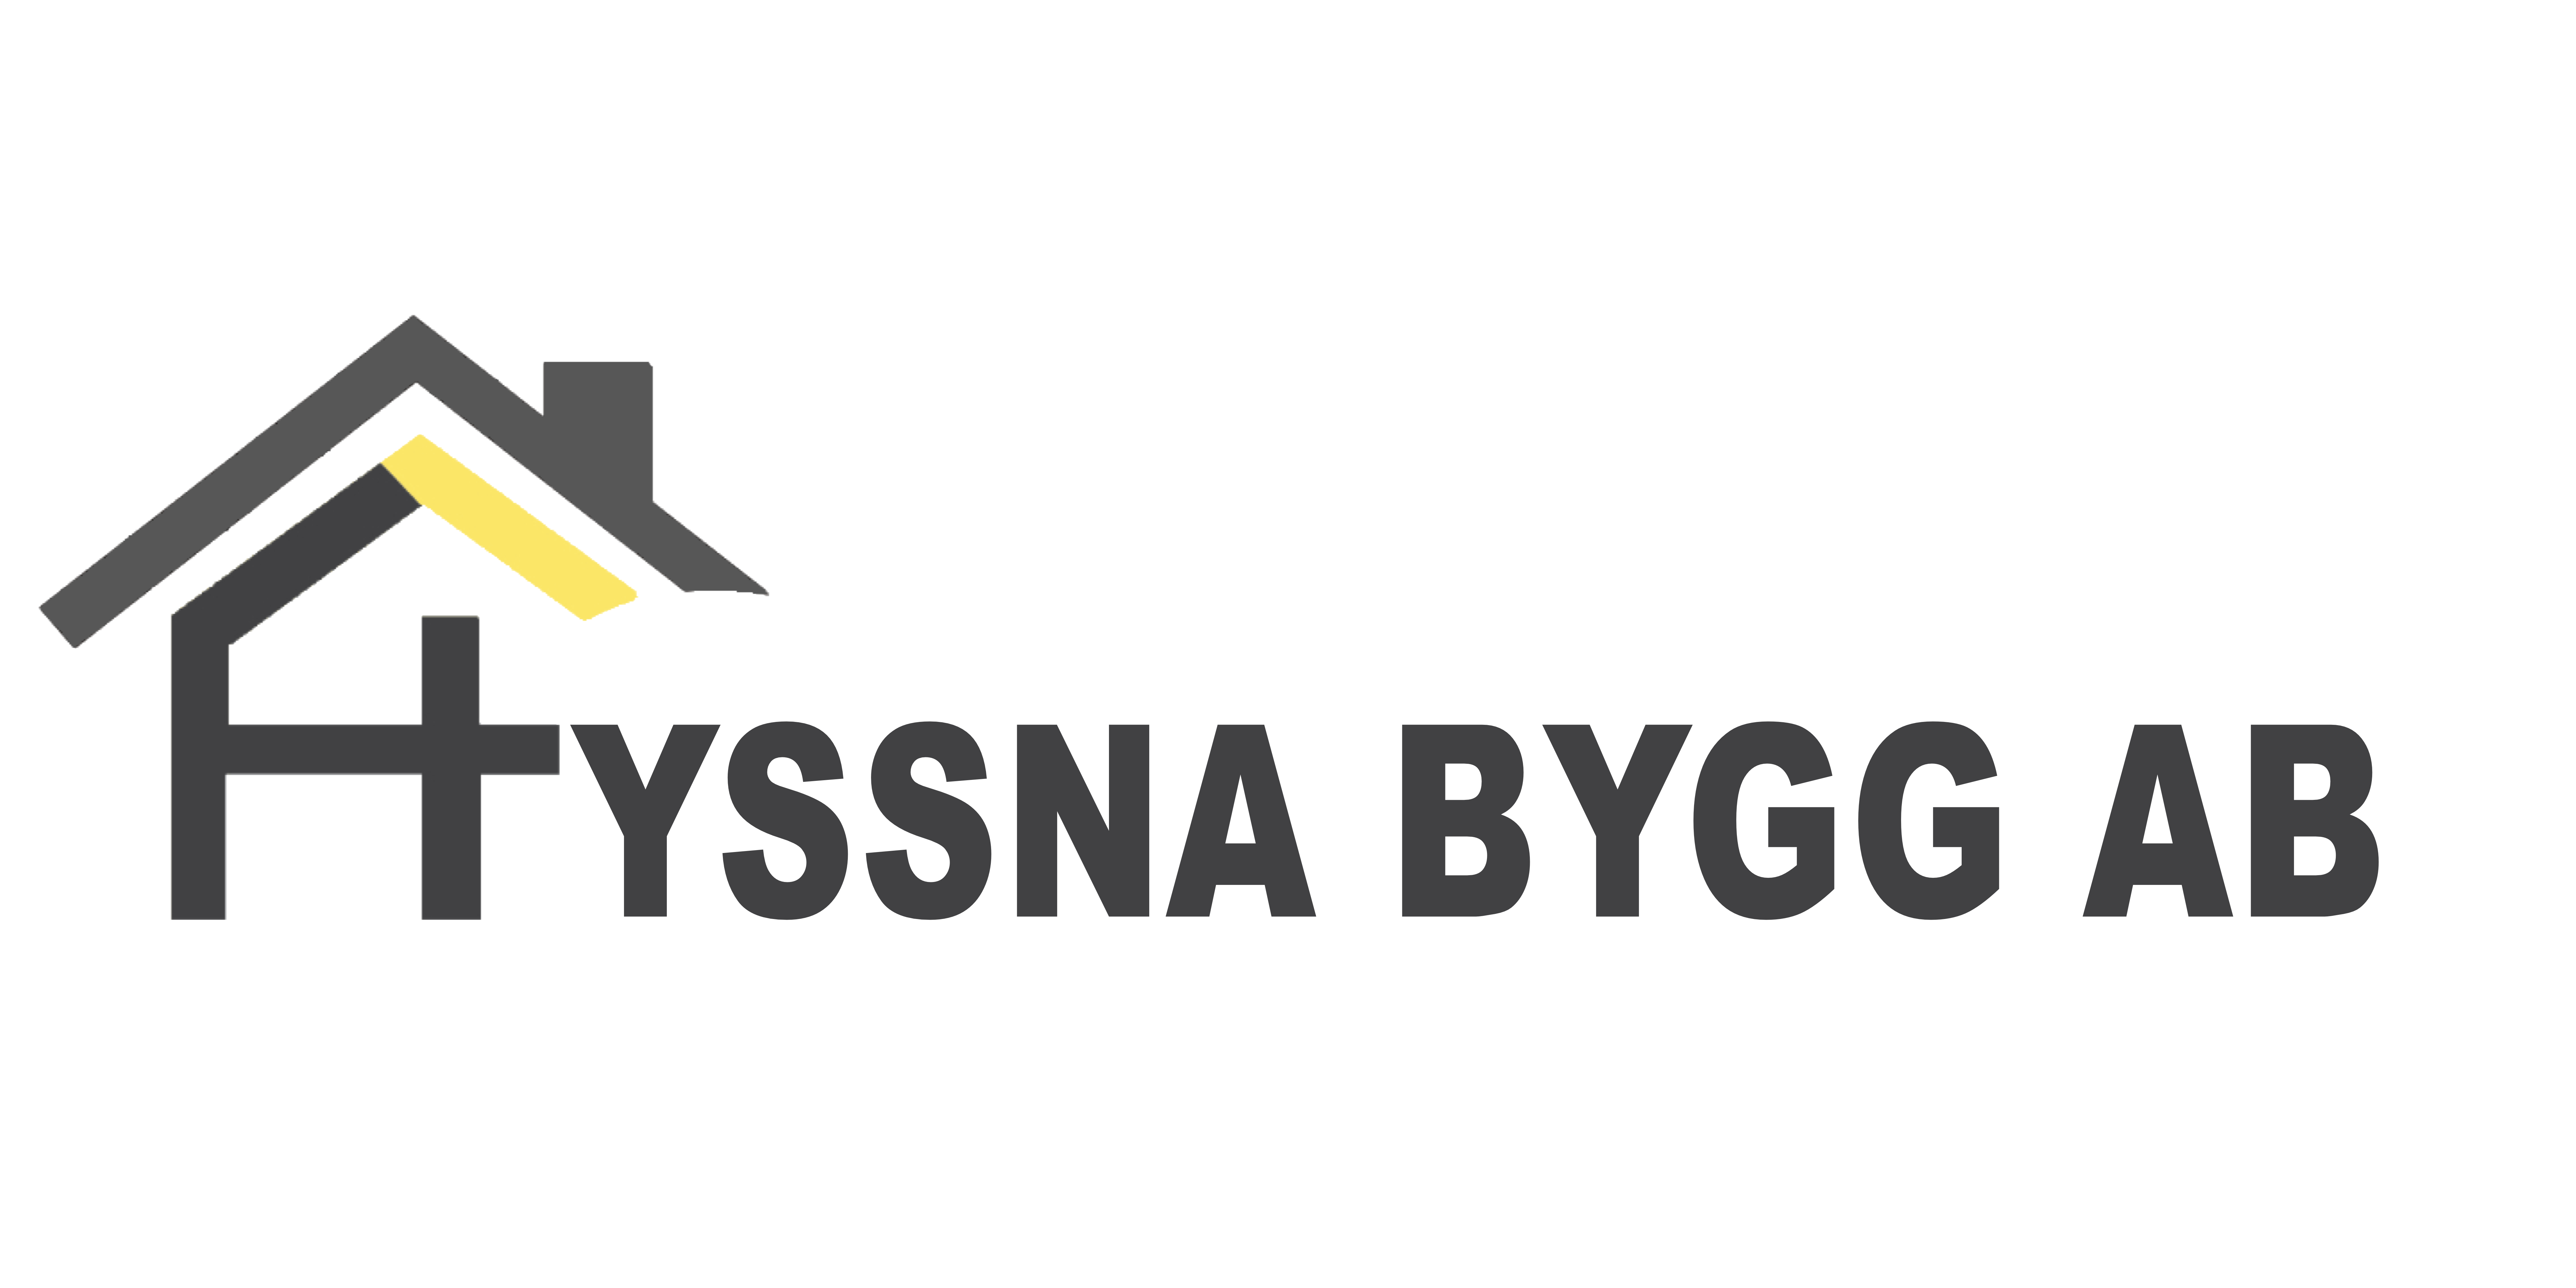 Hyssna Bygg AB